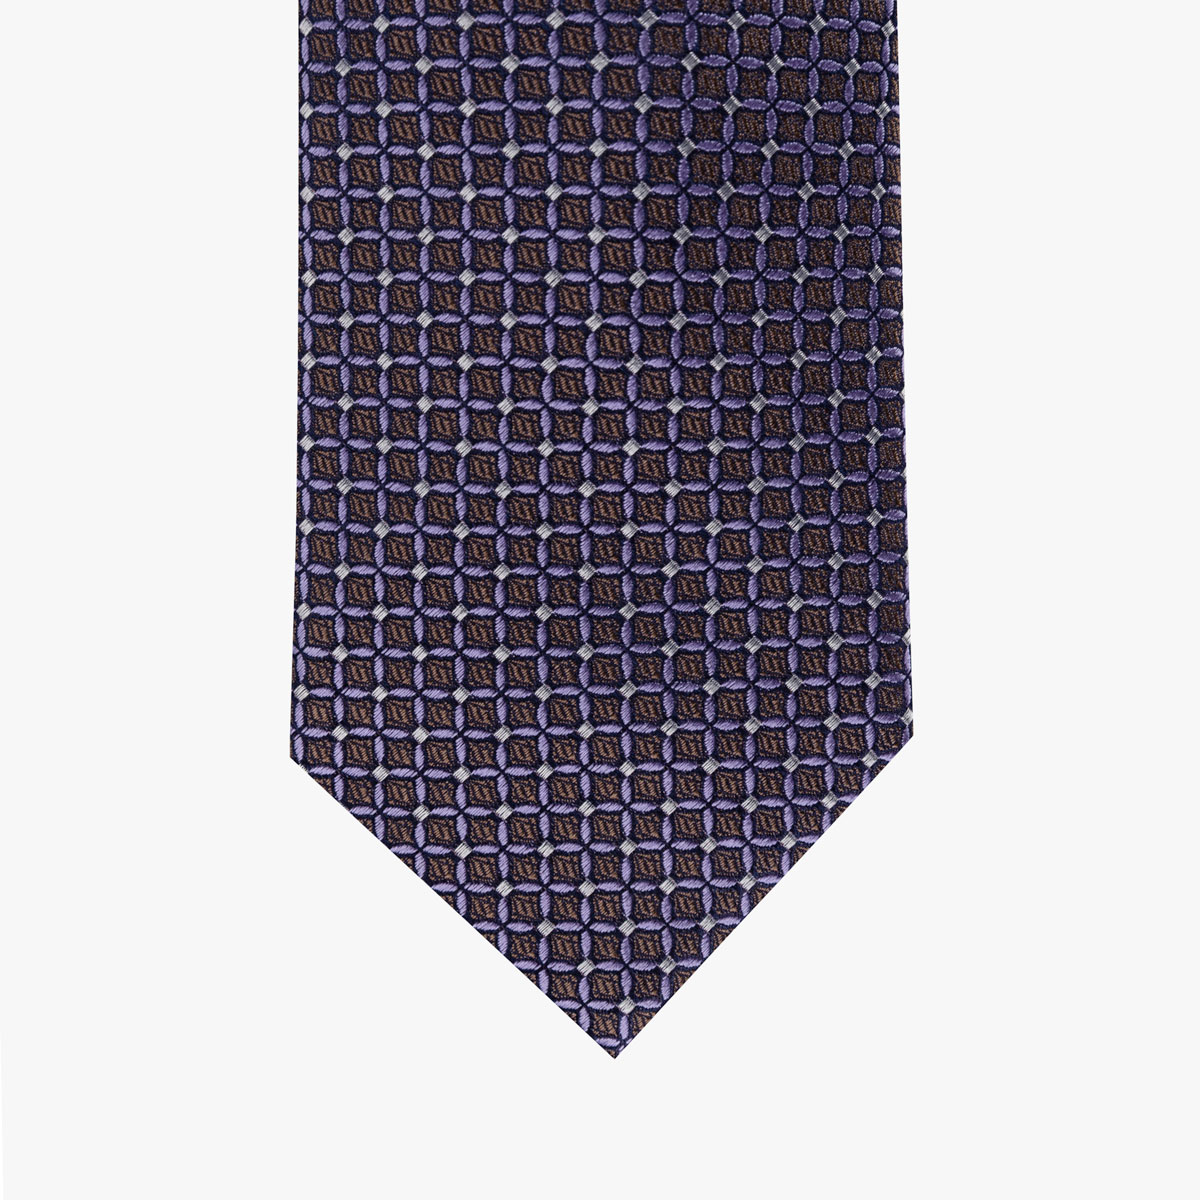 Krawatte mit geometrischem Muster in braun lila 